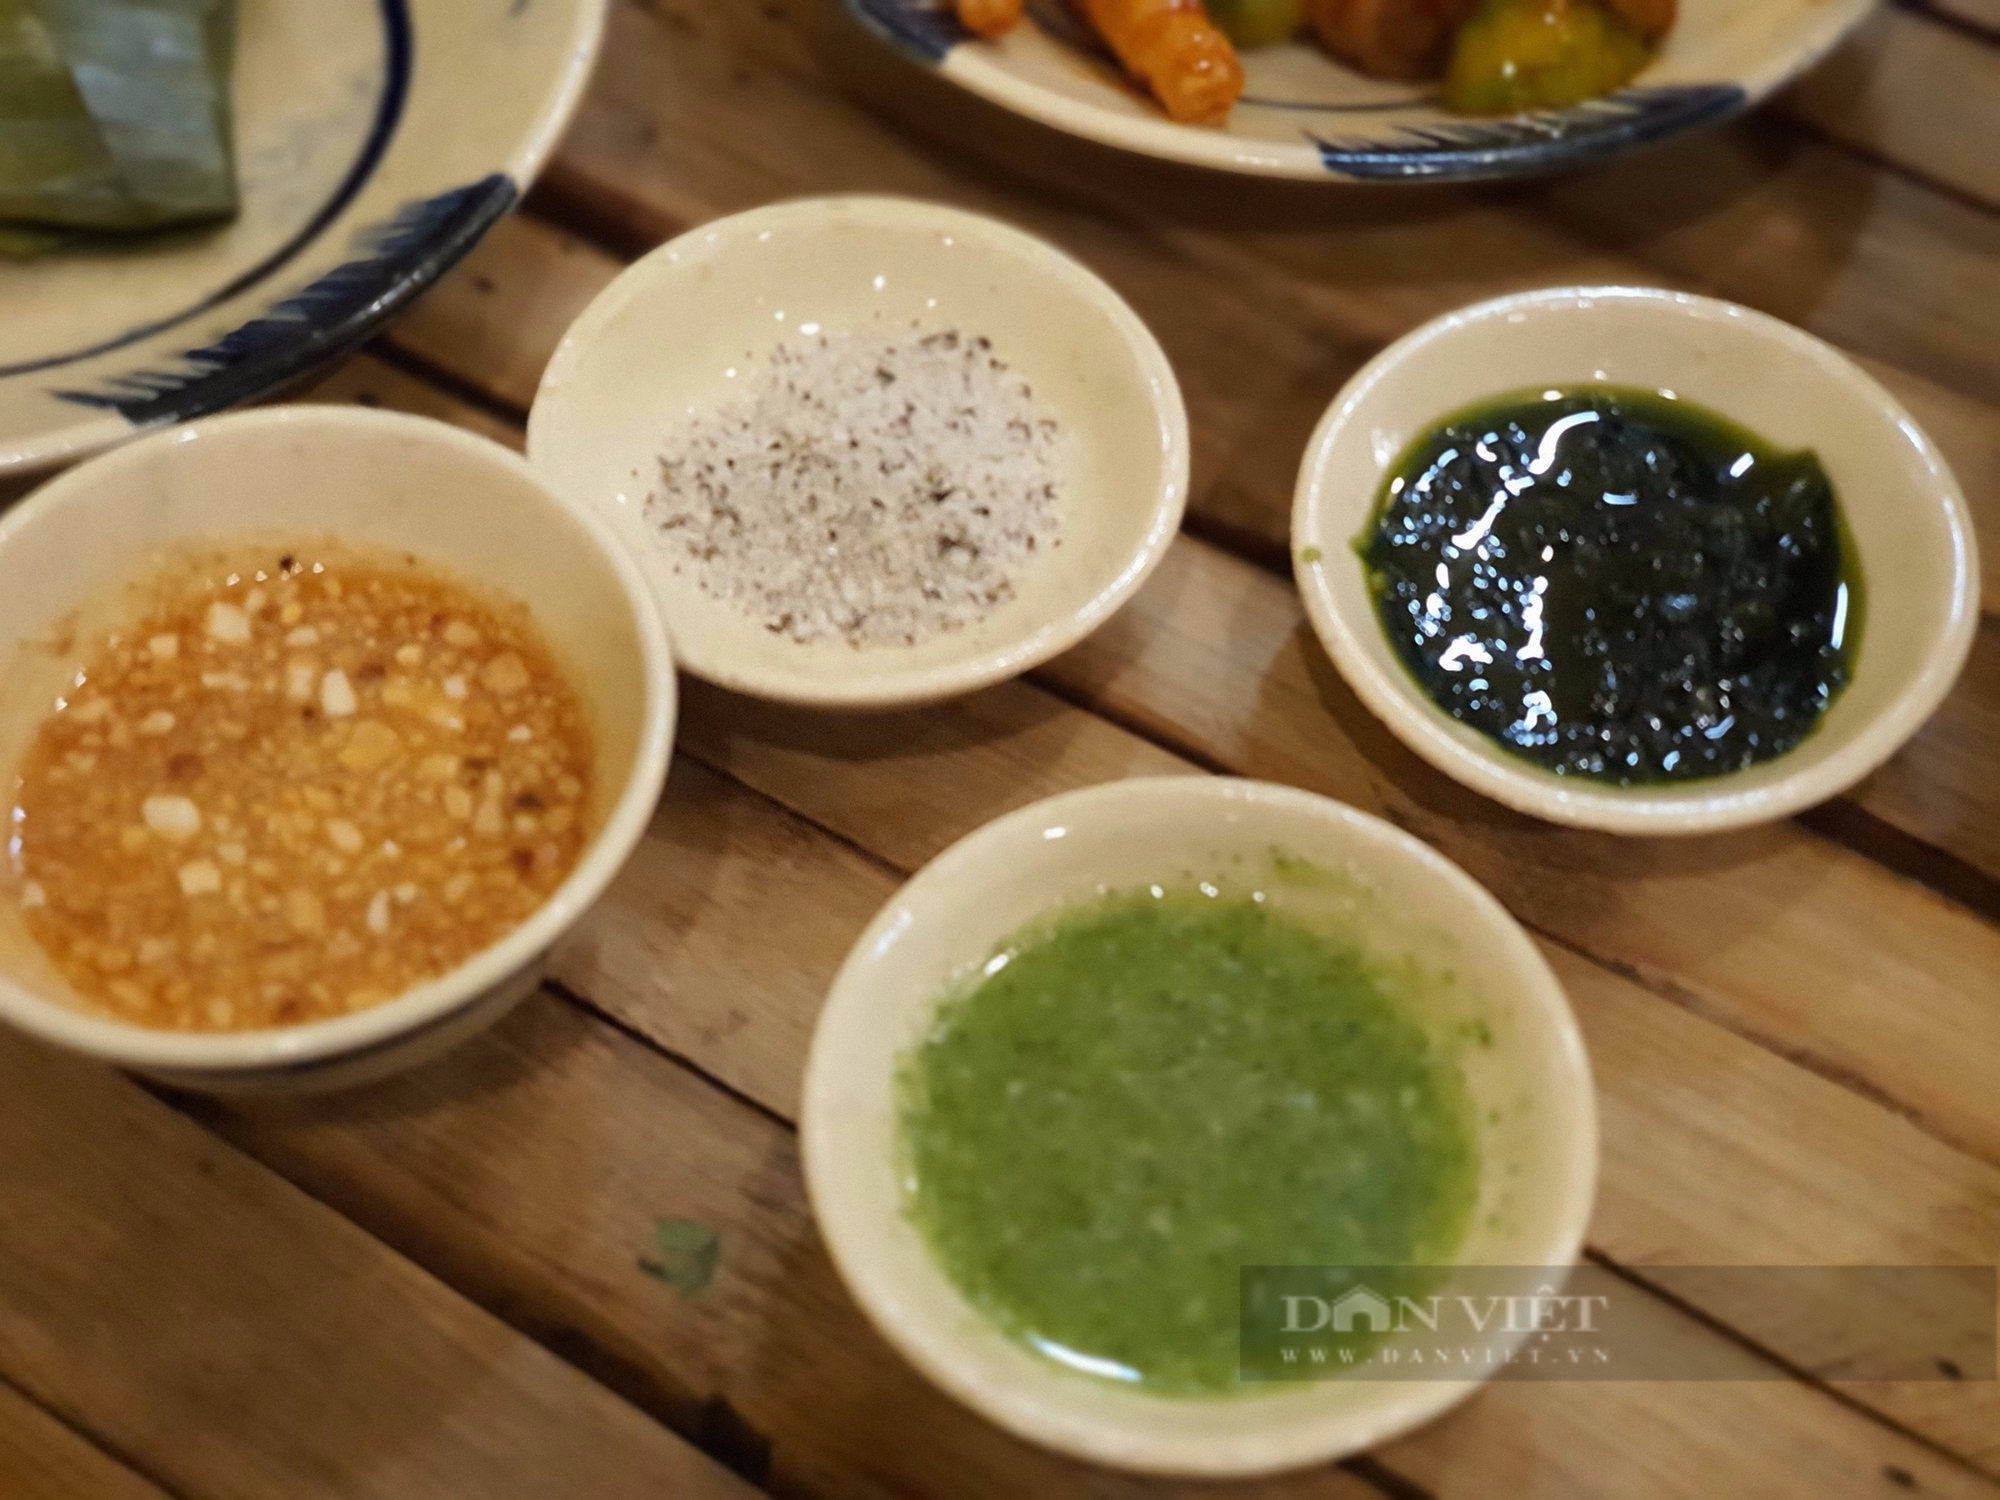 Sài Gòn quán: Quán lẩu gà lá é Phú Yên với 3 loại muối chấm thơm ngon - Ảnh 5.